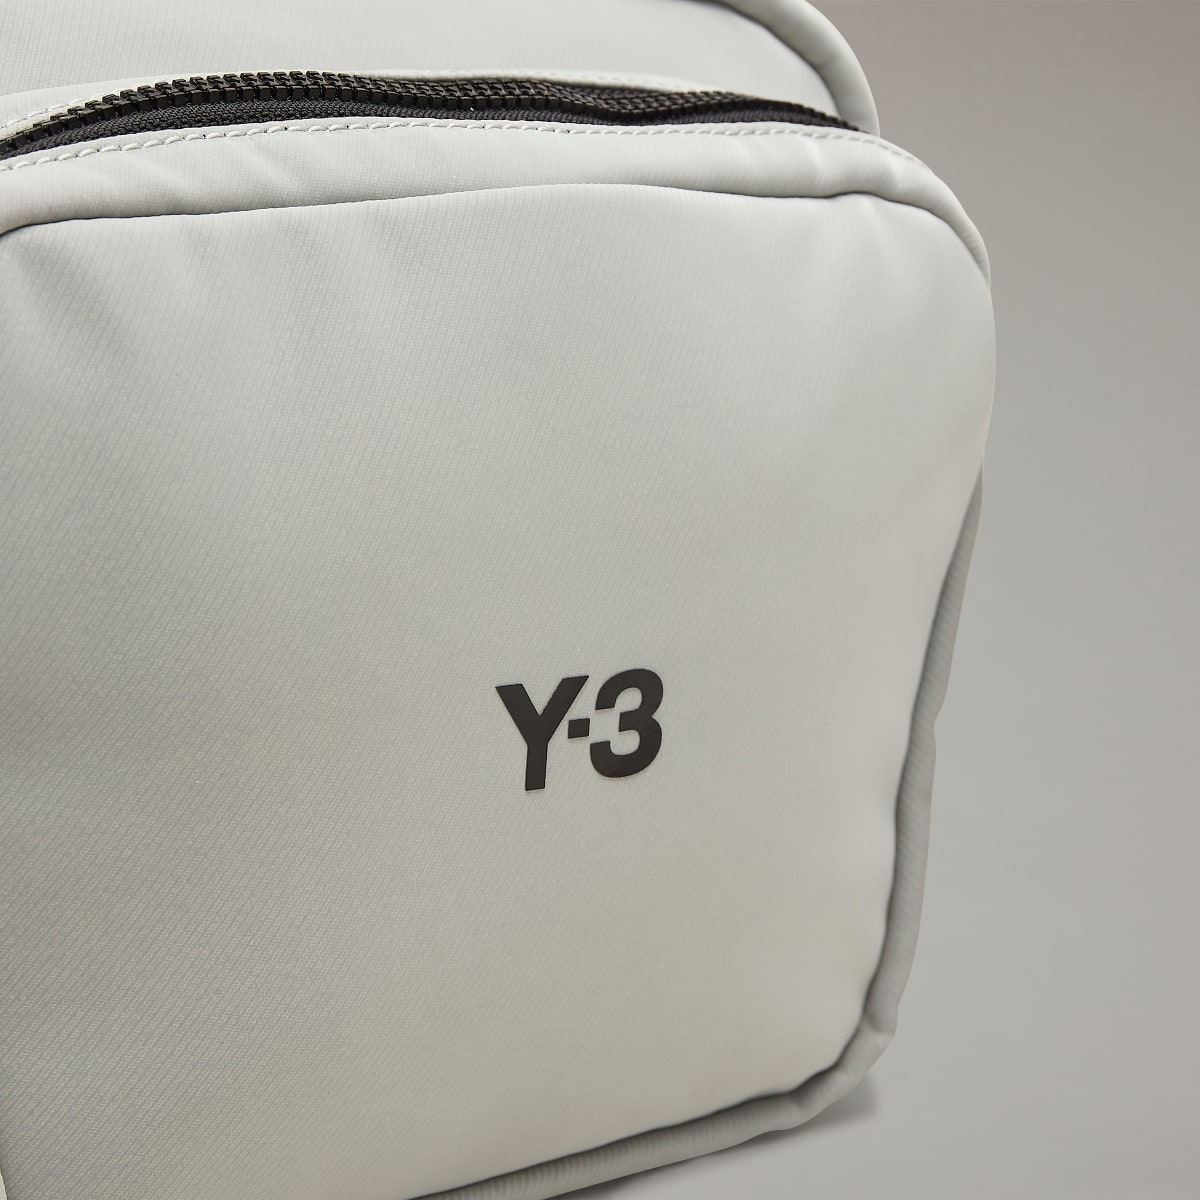 Adidas Y-3 Crossbody Bag. 7